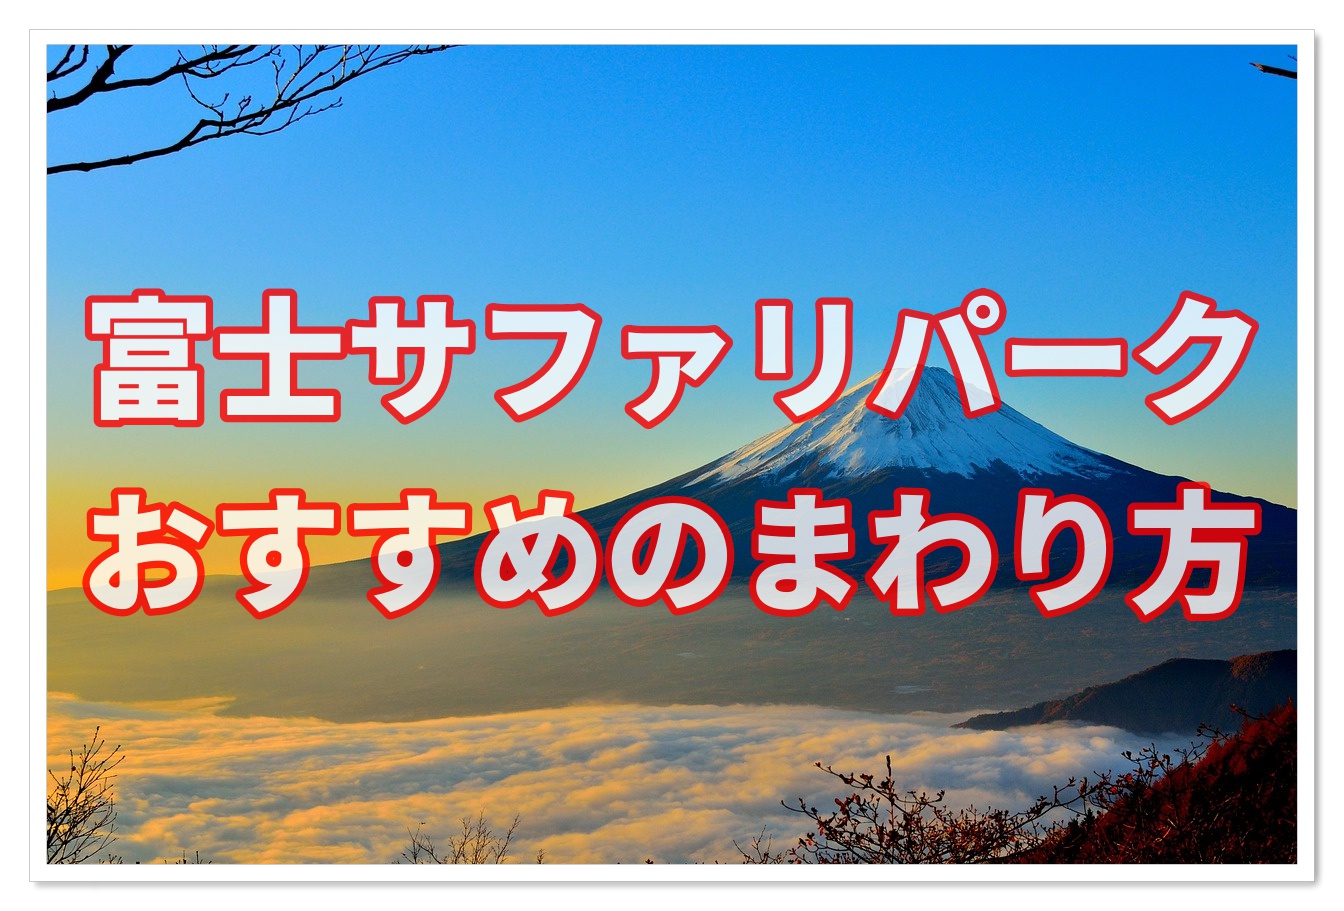 富士サファリパーク攻略の鍵は地図 所要時間とマップも紹介 子連れ旅行を楽しむ鉄板ブログ もう国内旅行は迷わせない